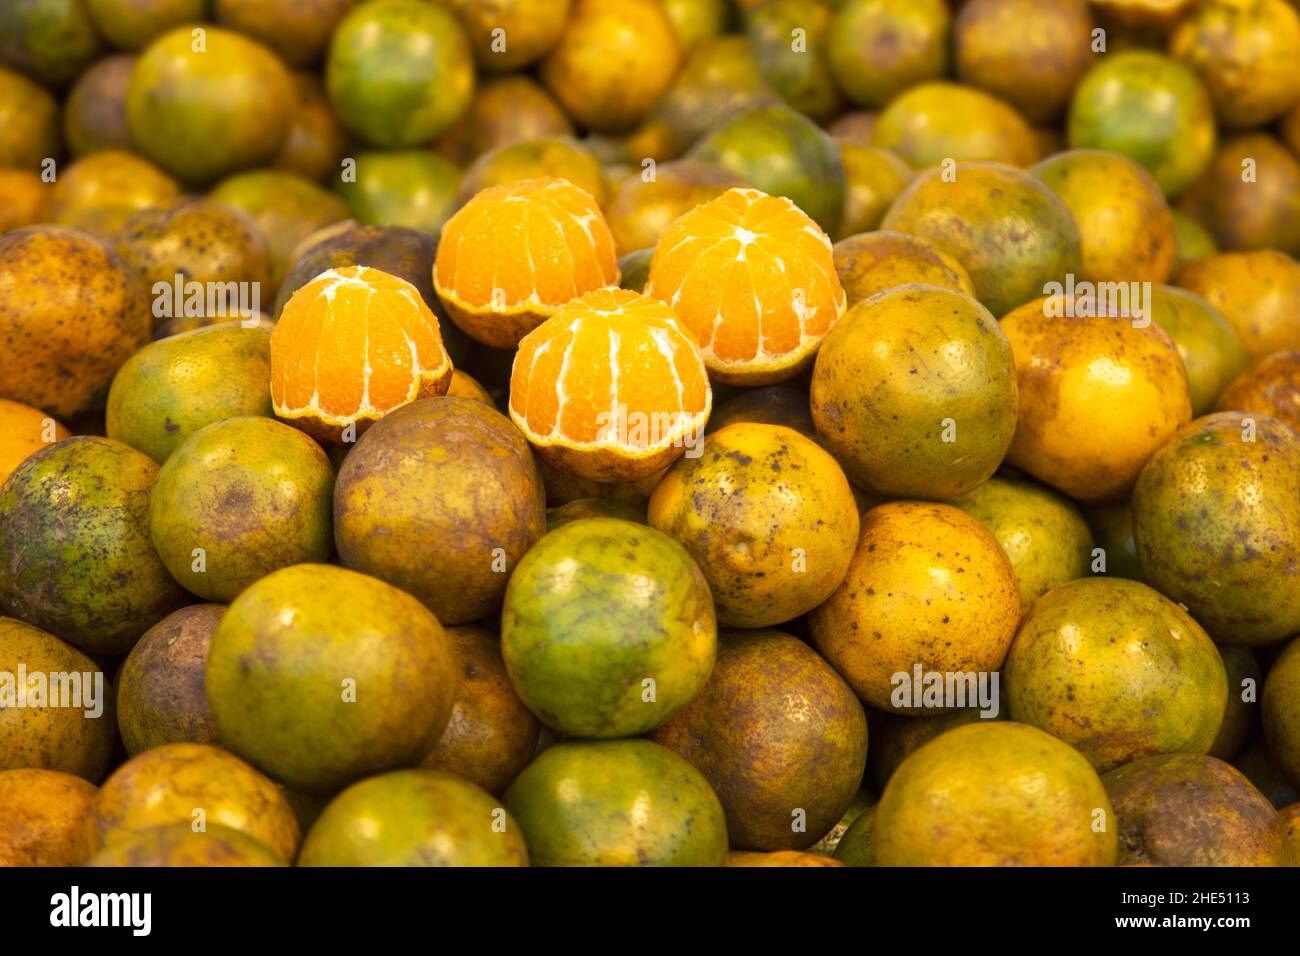 vitamin fruite in green tagerine orange for making orange juice Stock Photo